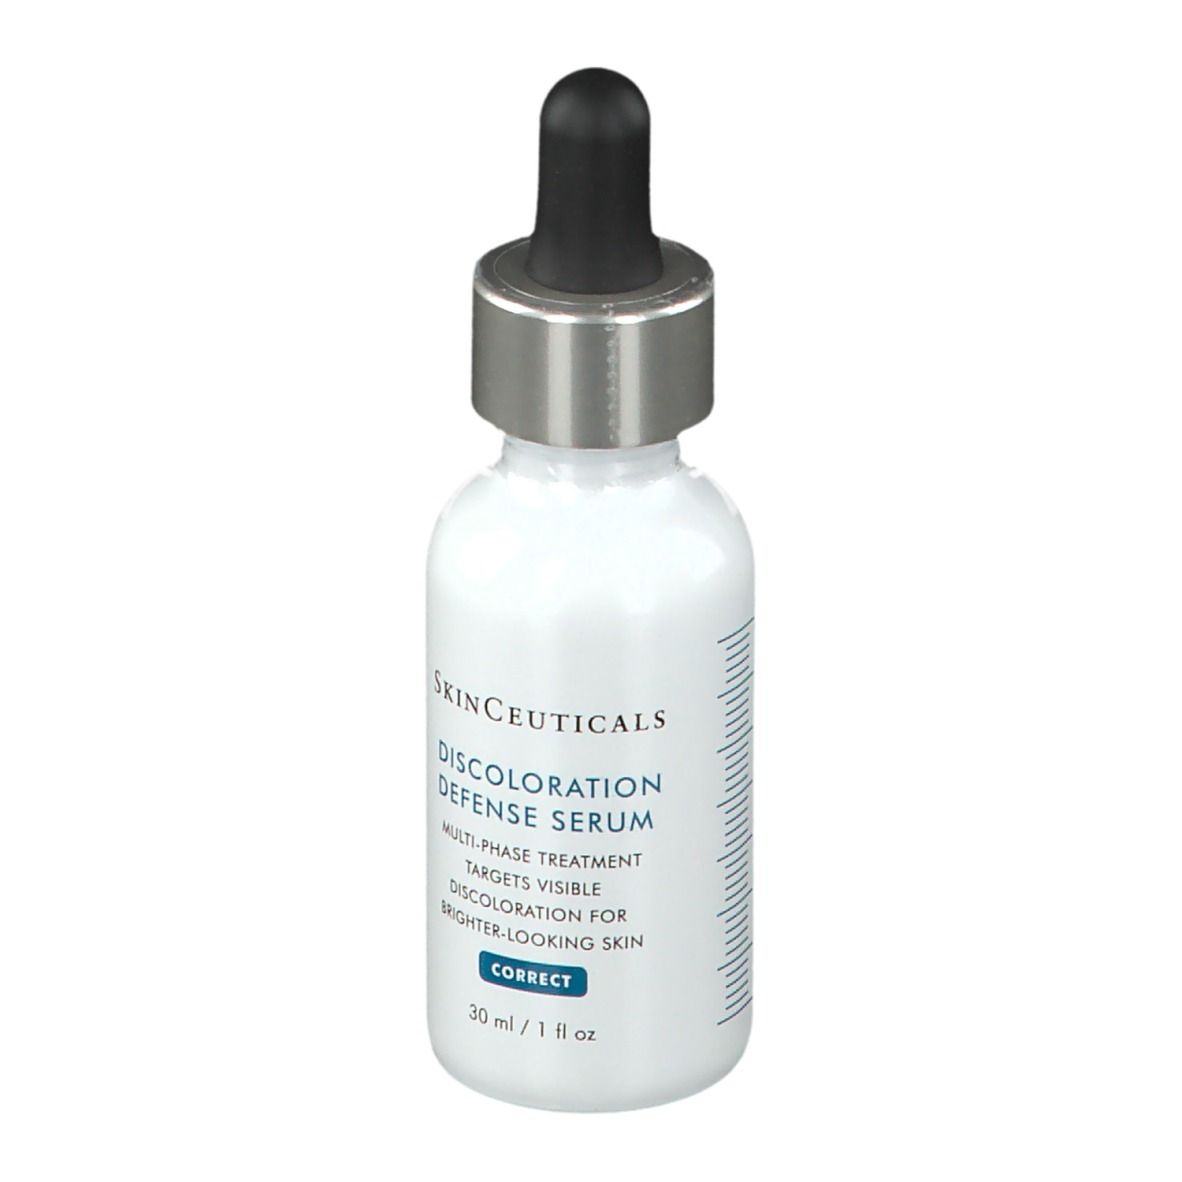 Skinceuticals Discoloration Defense Serum : sérum anti-taches 30ML